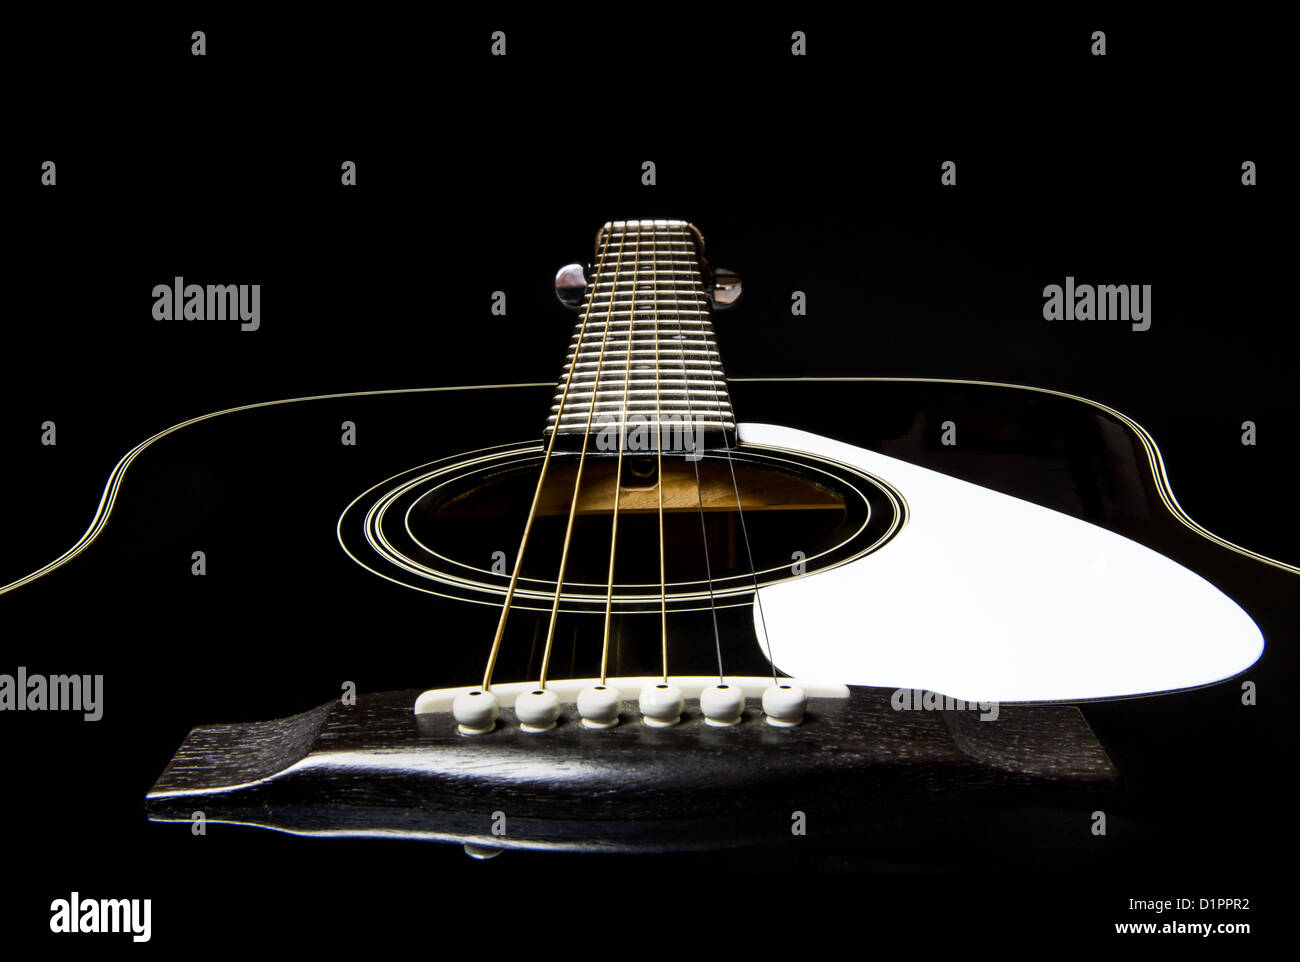 Schwarze Gitarre - eine klassische schwarze Stahlzeichenketteguitarre mit weißen Akzenten. Stockfoto